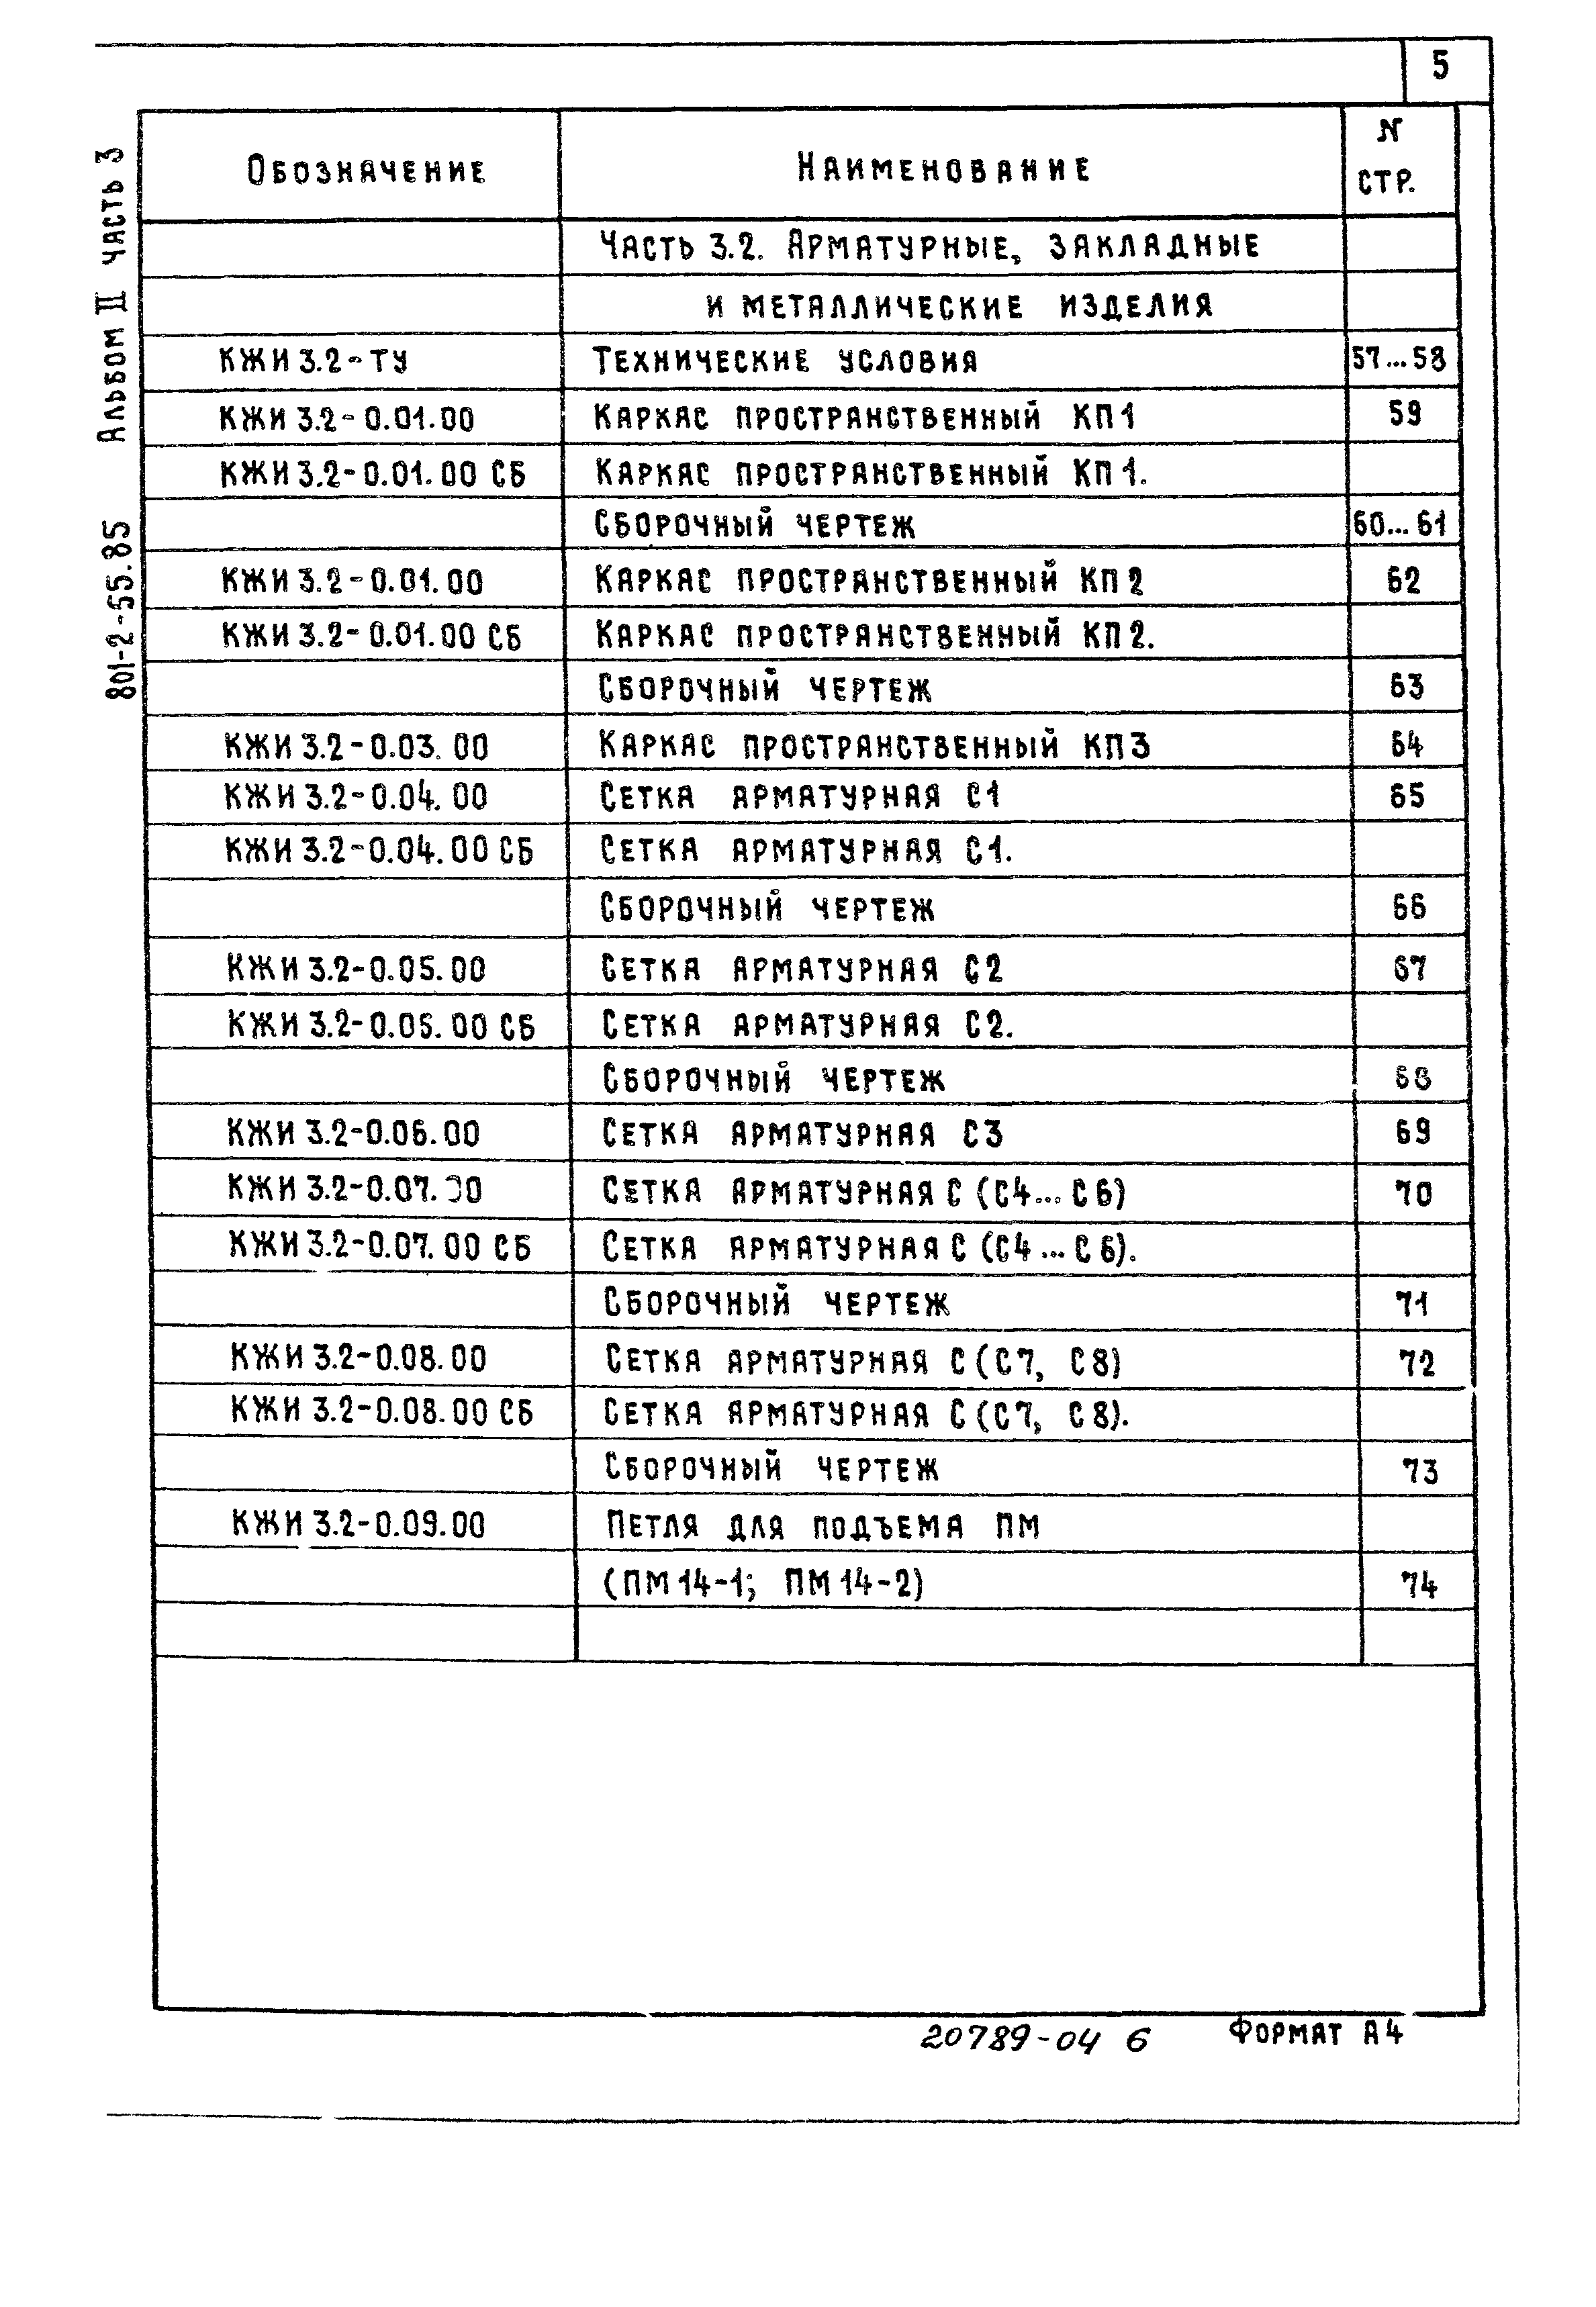 Типовой проект 801-2-55.85